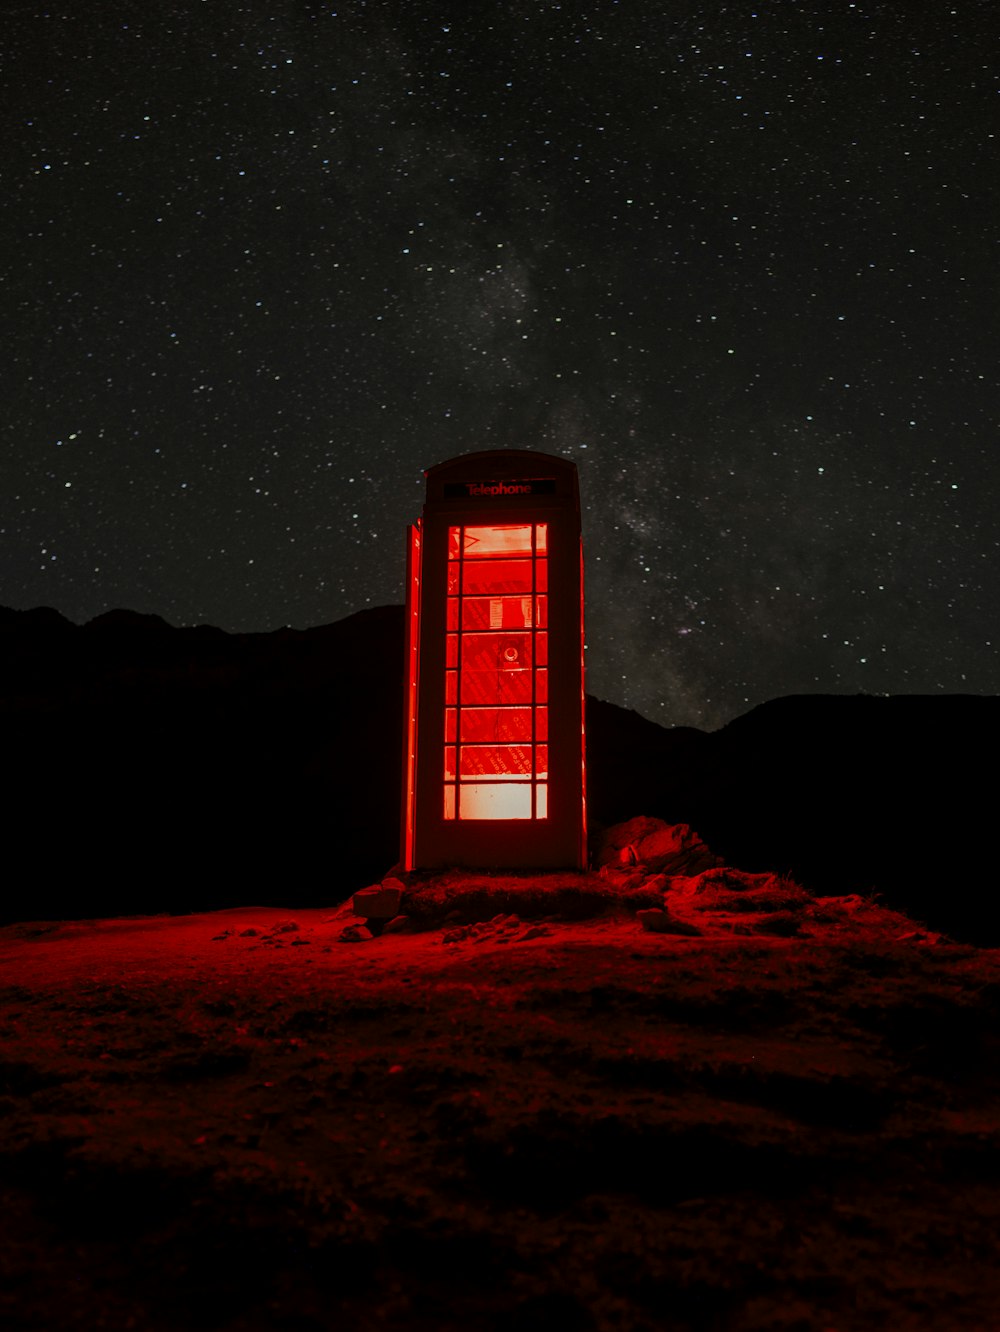 Eine rote Telefonzelle, die auf einem Hügel unter einem Nachthimmel sitzt